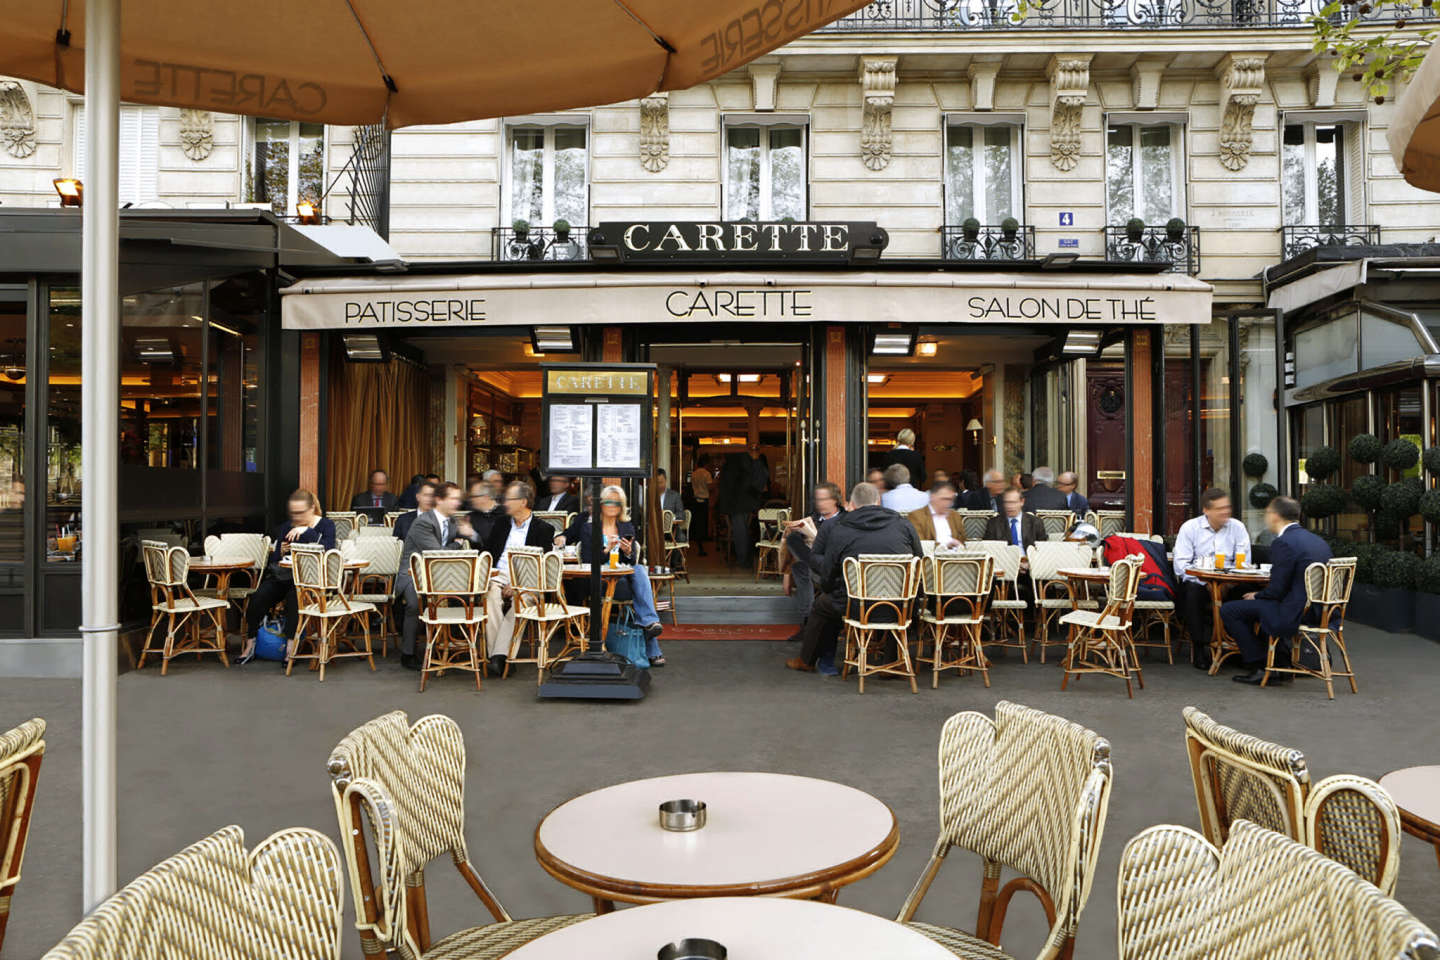 Carrete, одно из многочисленных кафе в Париже